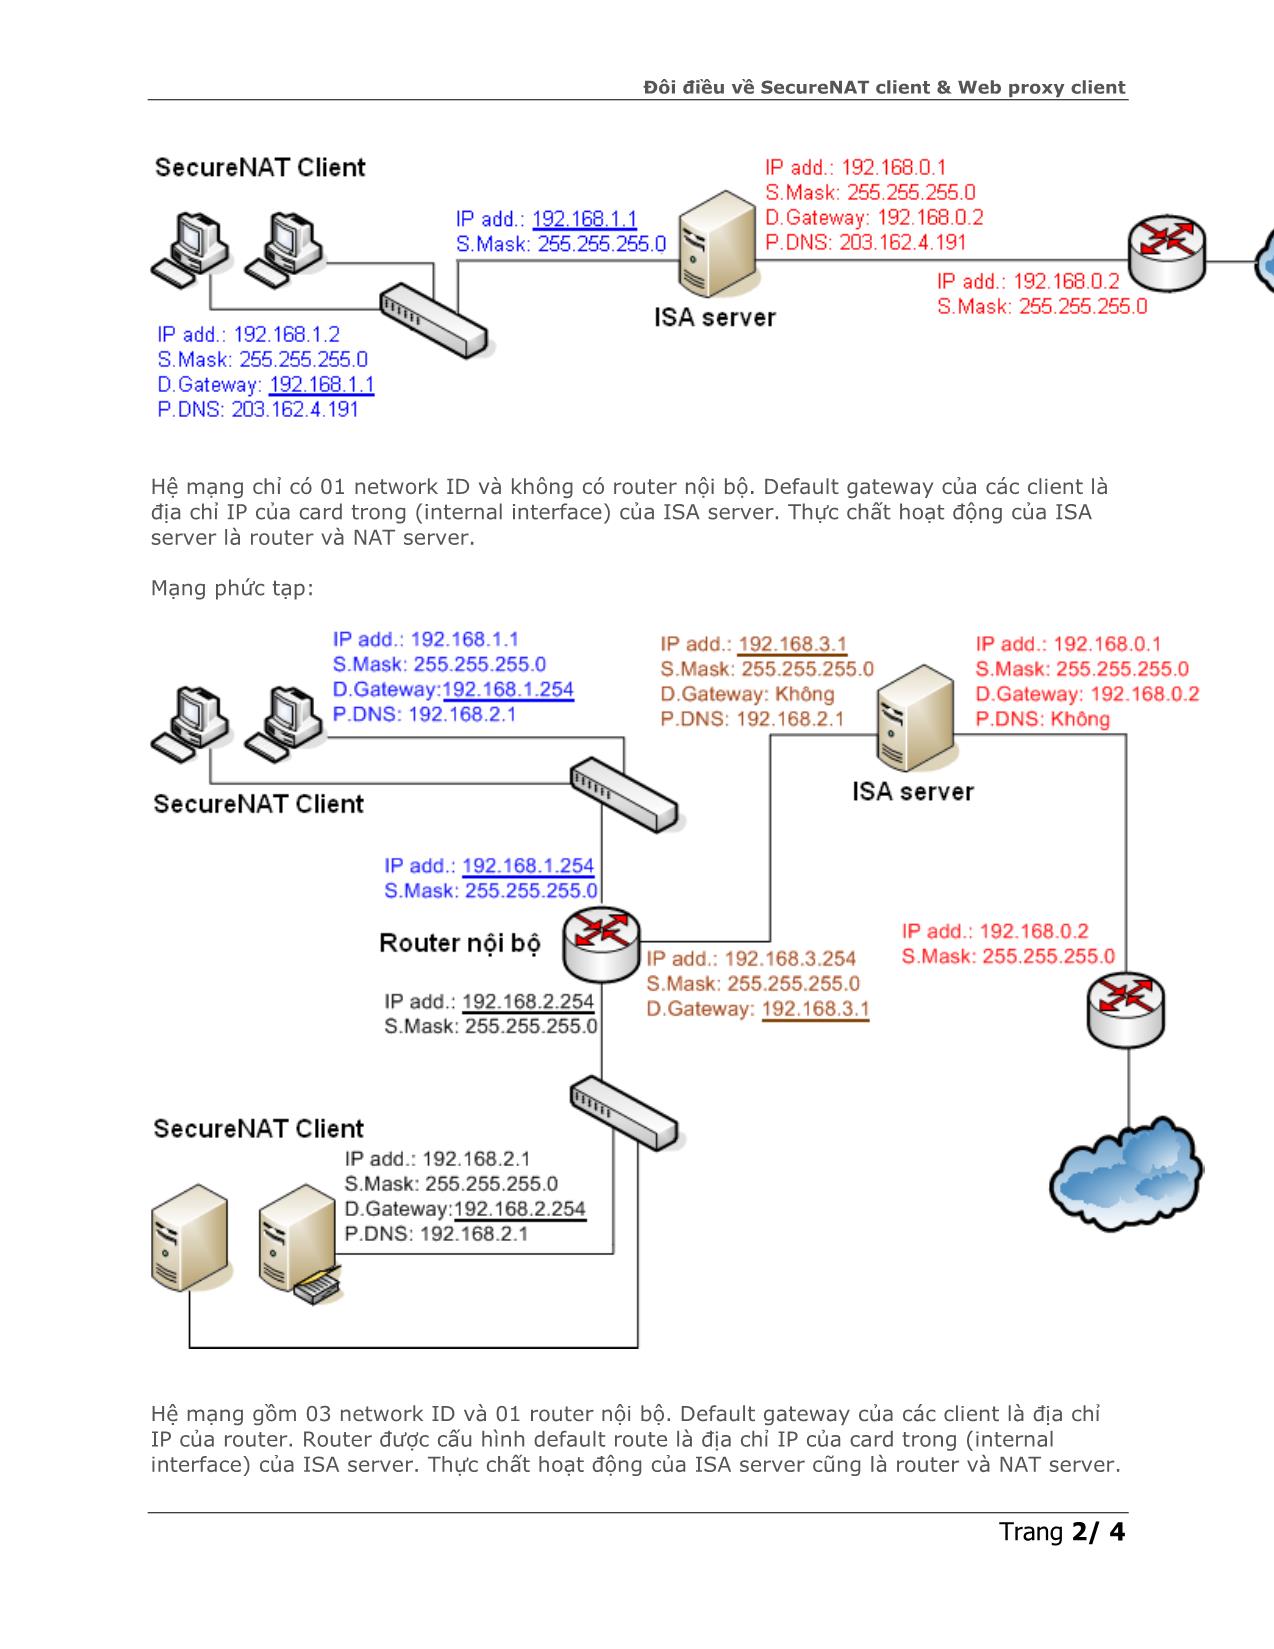 Đôi điều về SecureNAT client & Web proxy client trang 2